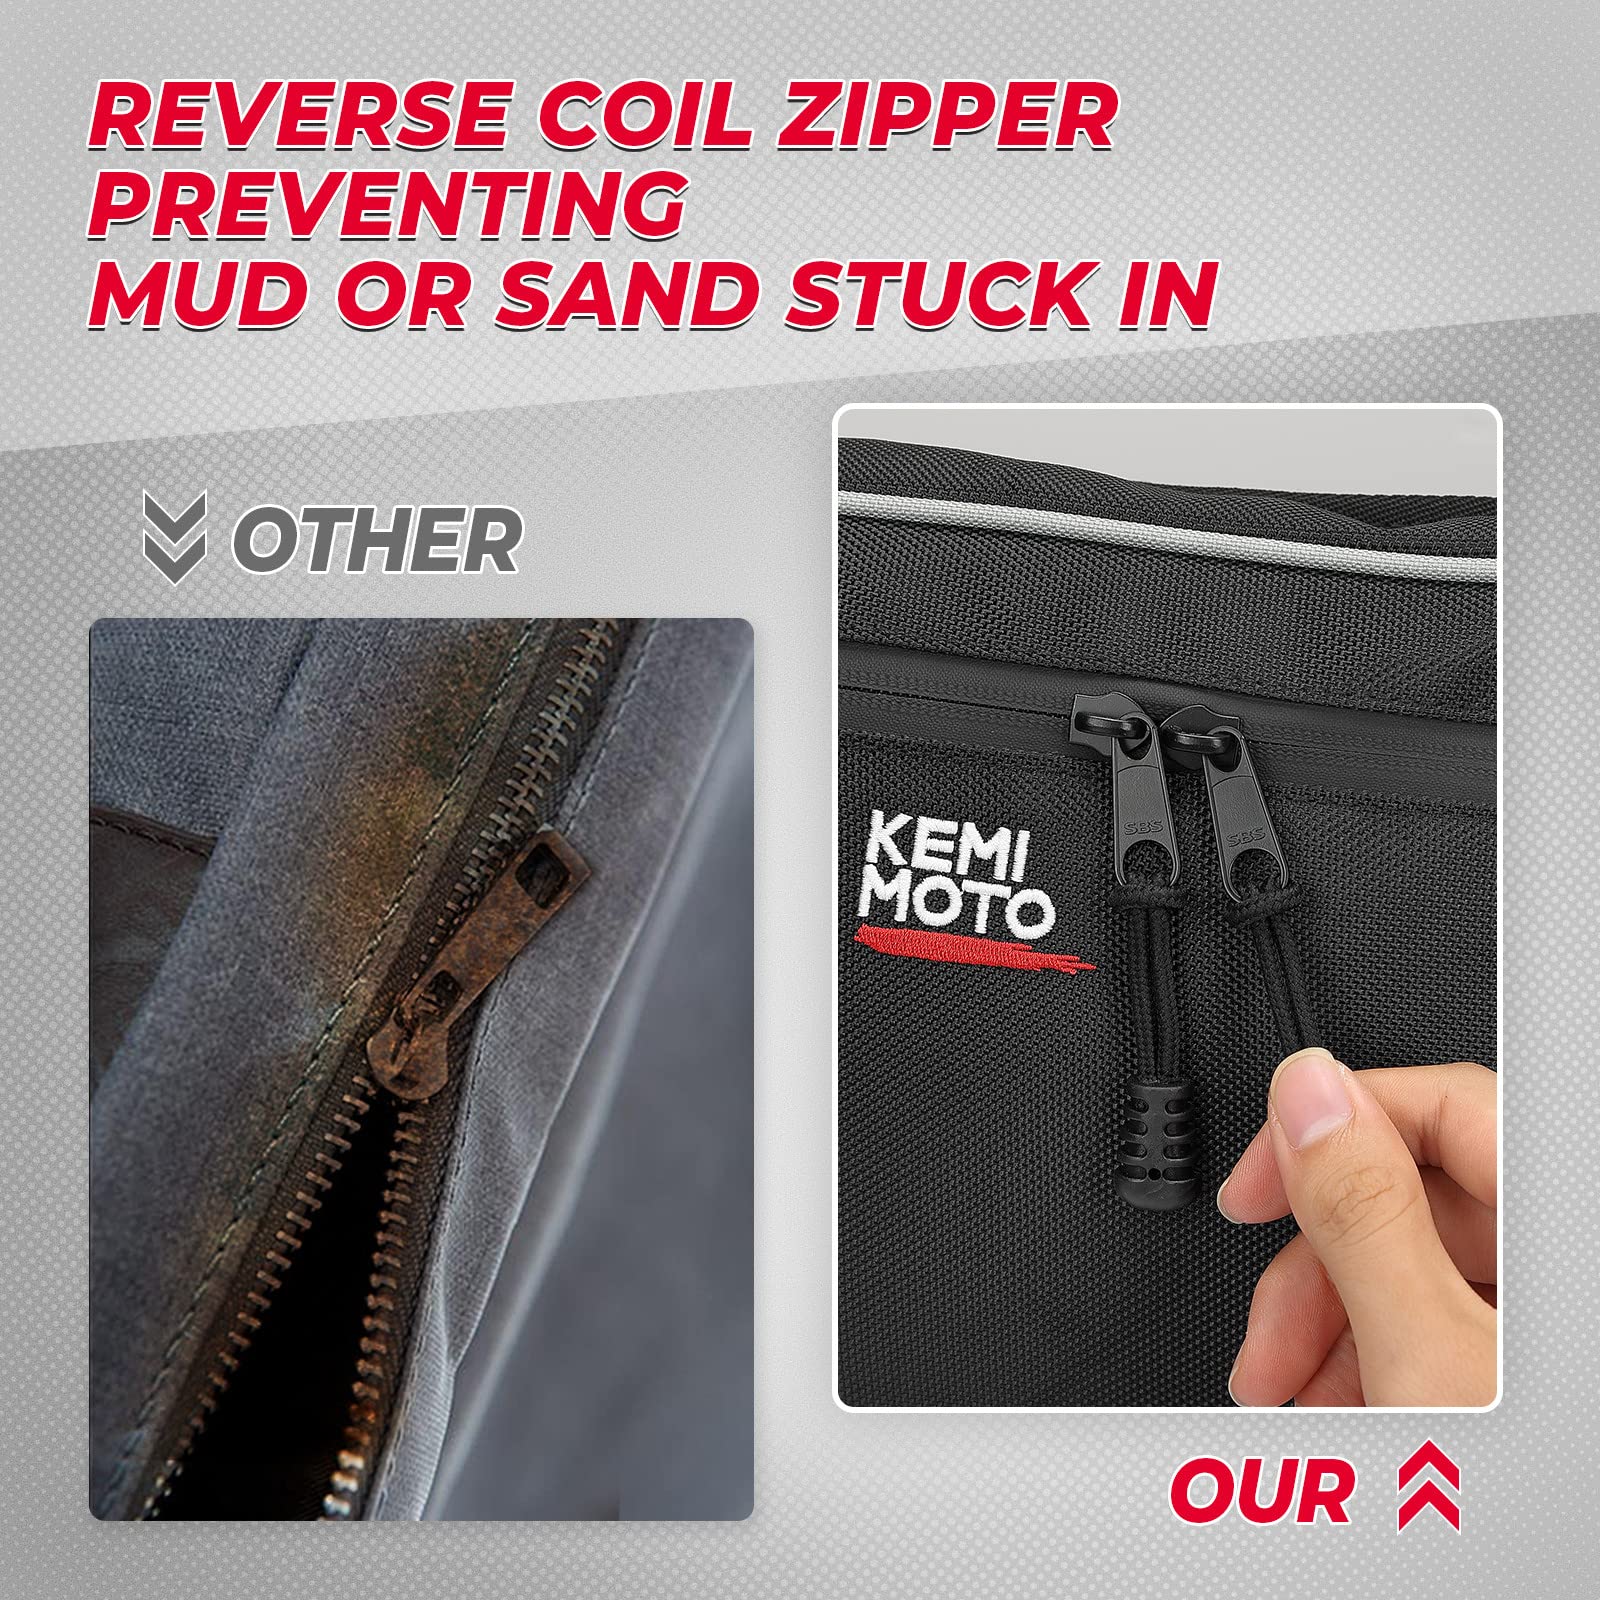 kemimoto door bags have reverse coil zipper